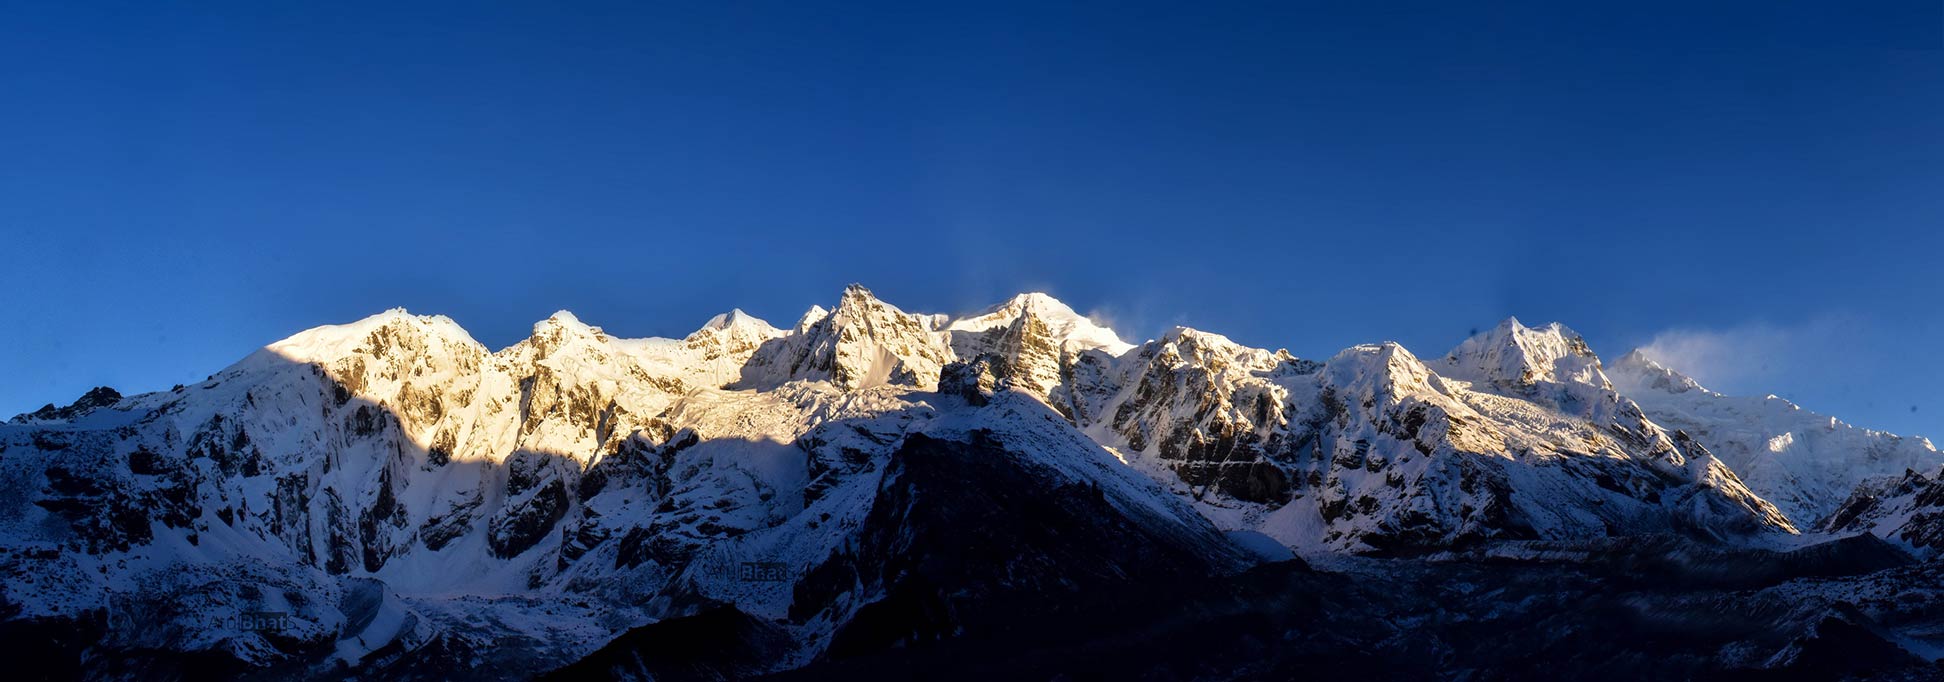 Himalayan peaks, seen from Goecha La, Sikkim